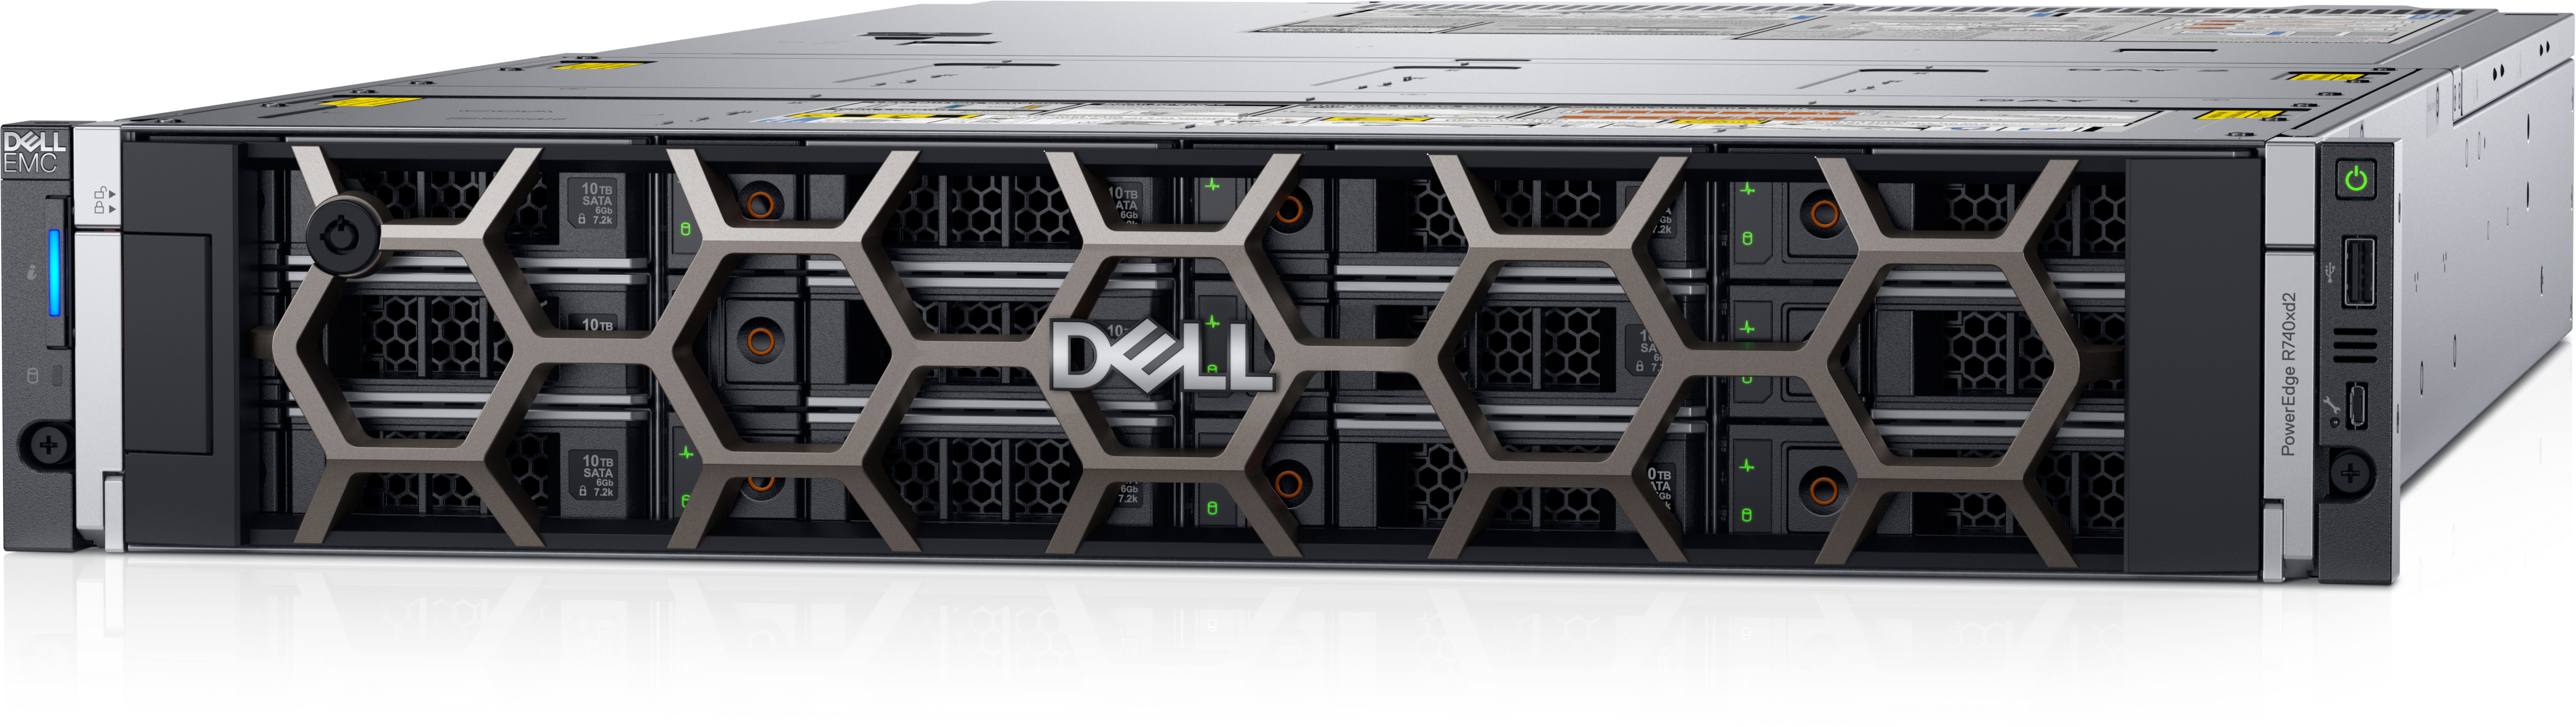 Dell(TM) PowerEdge(TM) R740xd2 Rack Mount Server